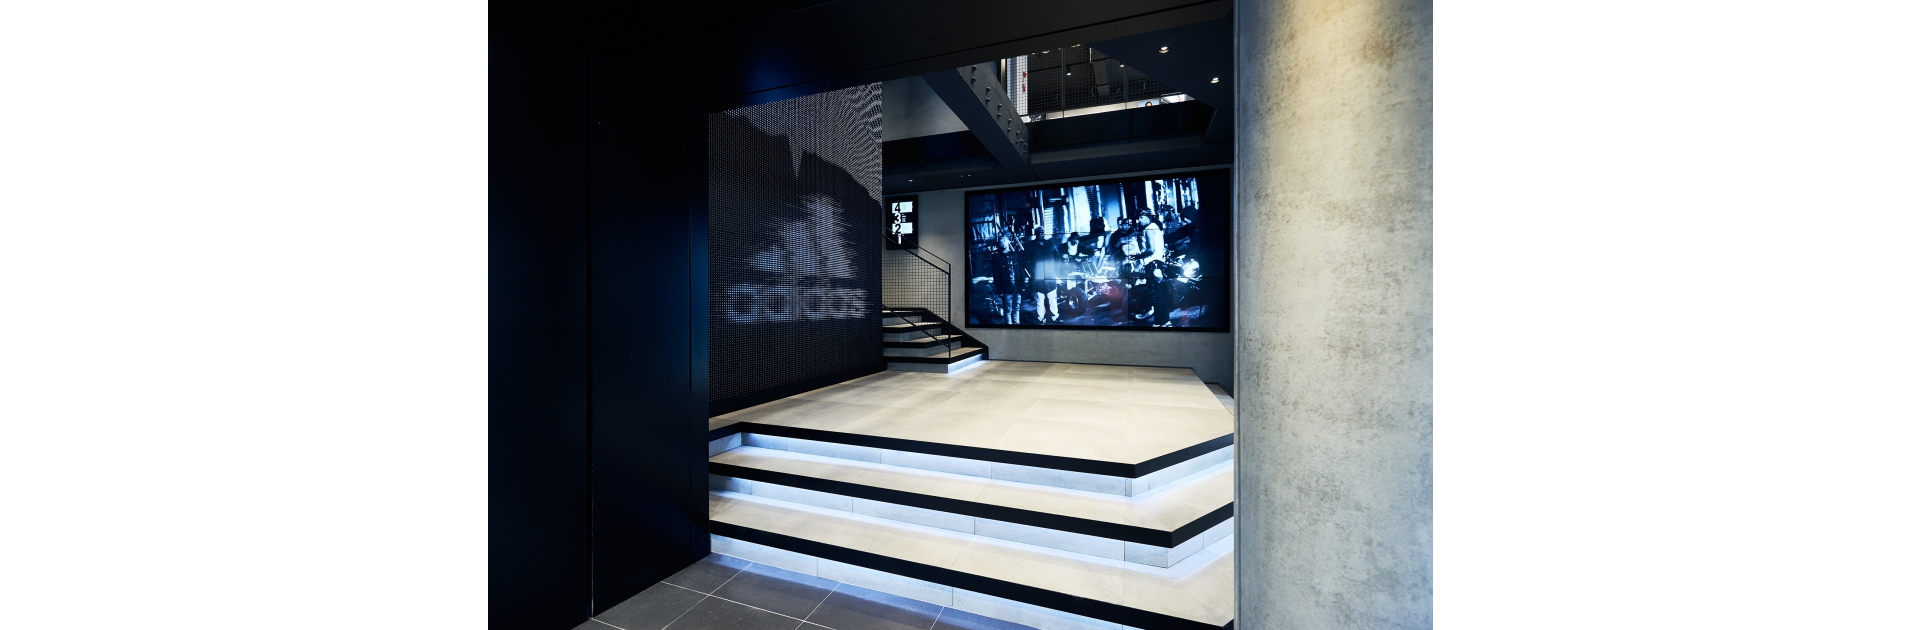 全新開幕adidas西門漢中門市，入口處以巨幅LED螢幕及電視牆呈現強烈adidas品牌形象。 2